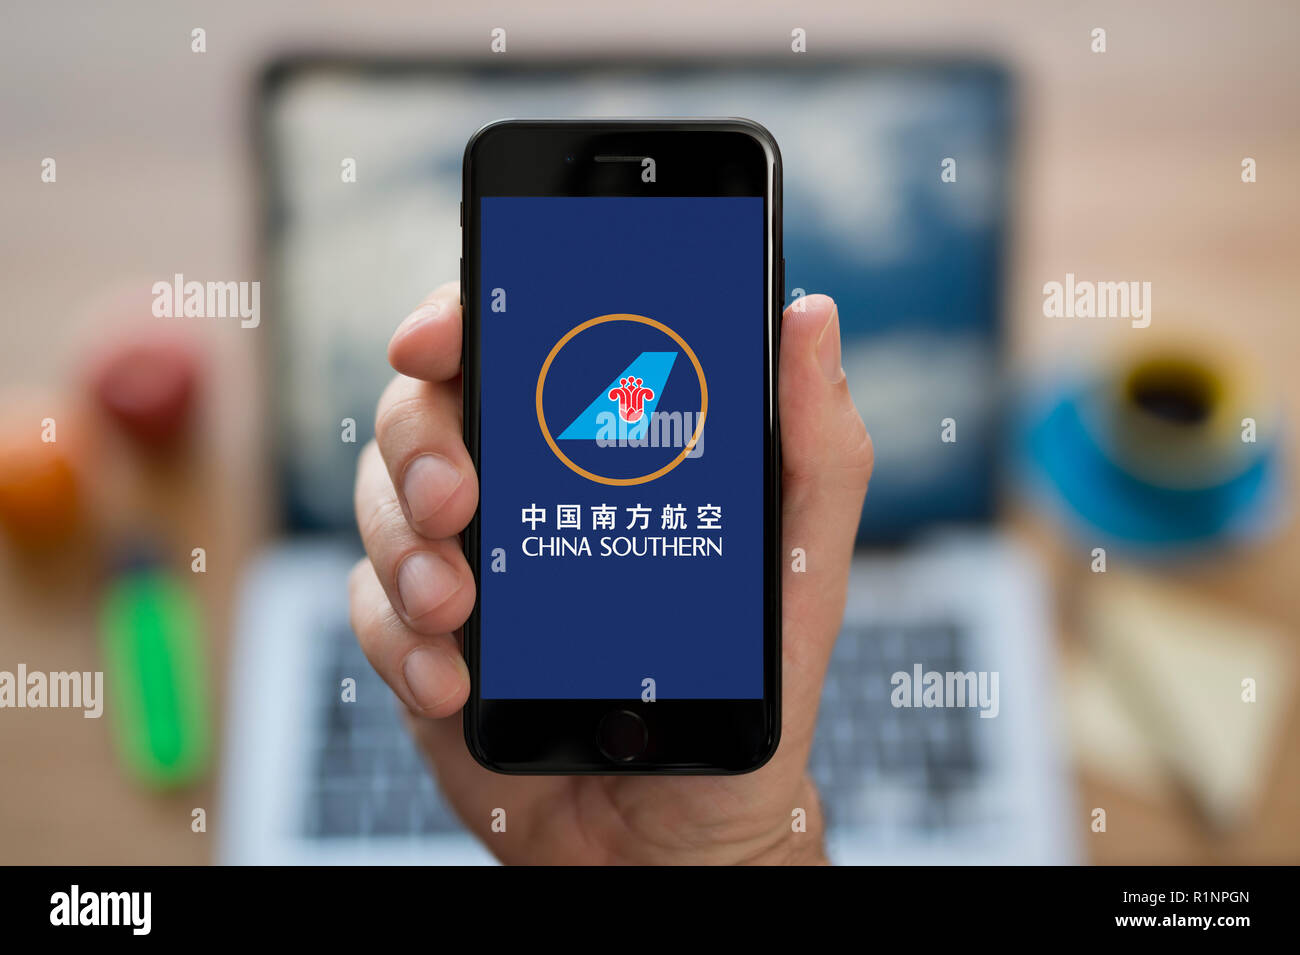 Un uomo guarda al suo iPhone che visualizza la China Southern Airlines logo, mentre se ne sta seduto alla sua scrivania per computer (solo uso editoriale). Foto Stock